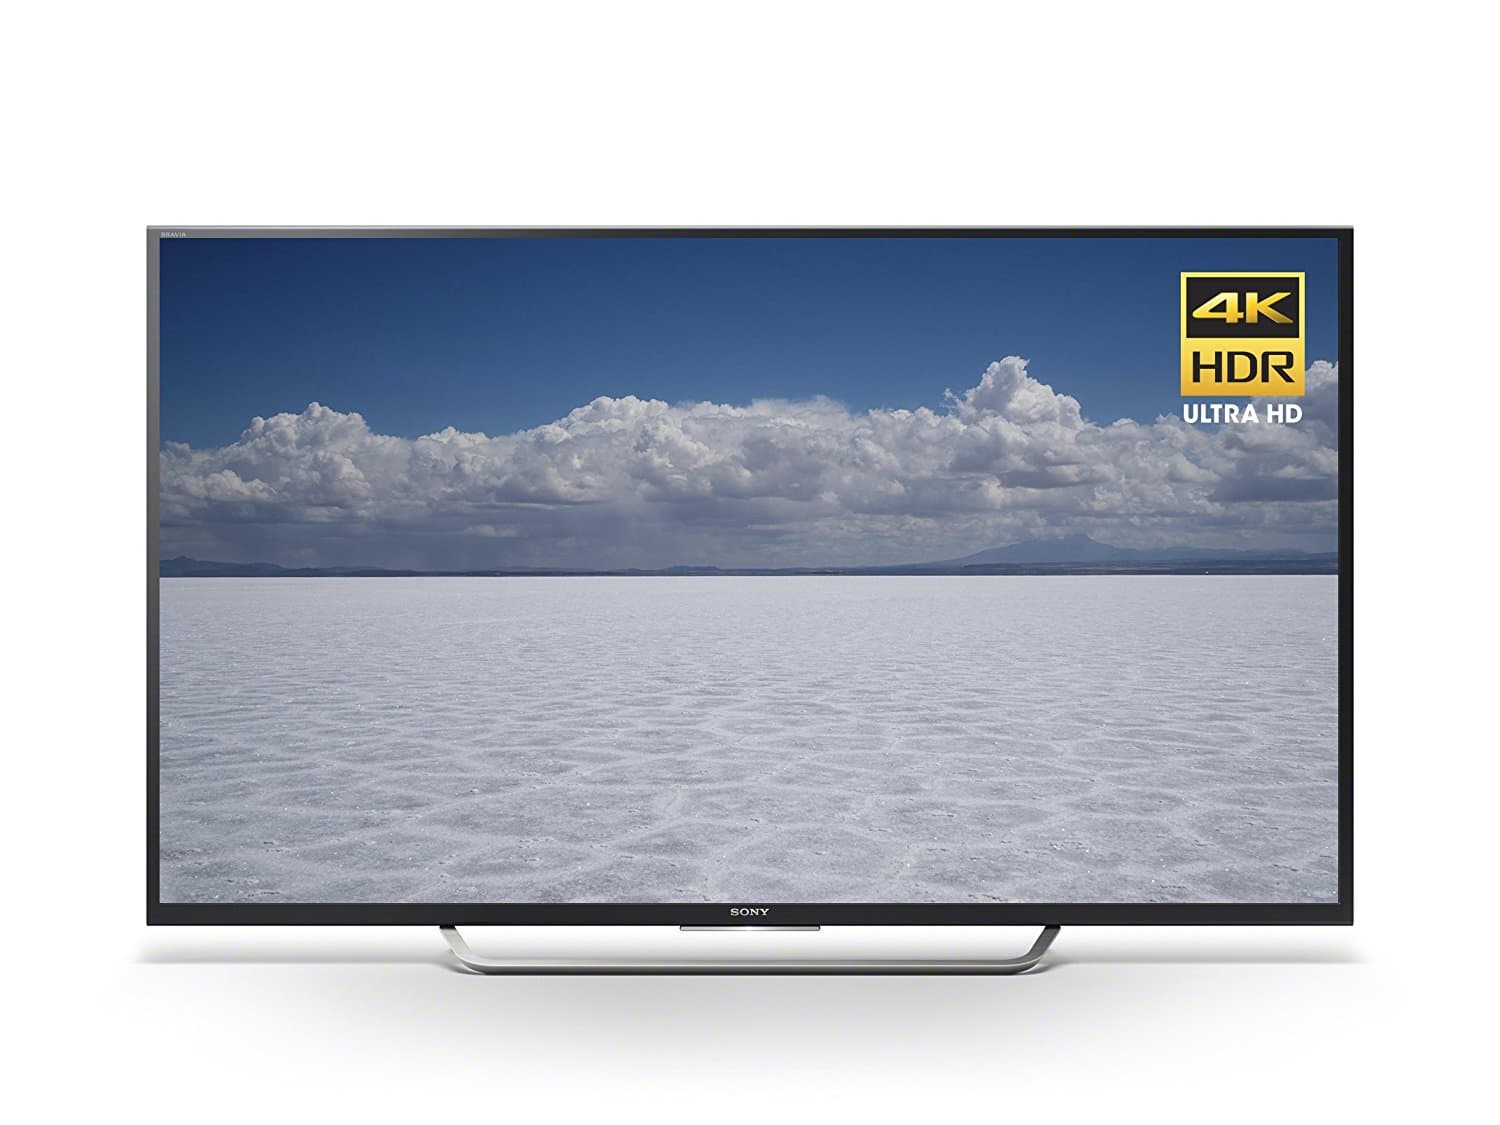 Sony XBR55X700D 55_Inch HDR 4K Ultra HD TV _2016 Model_